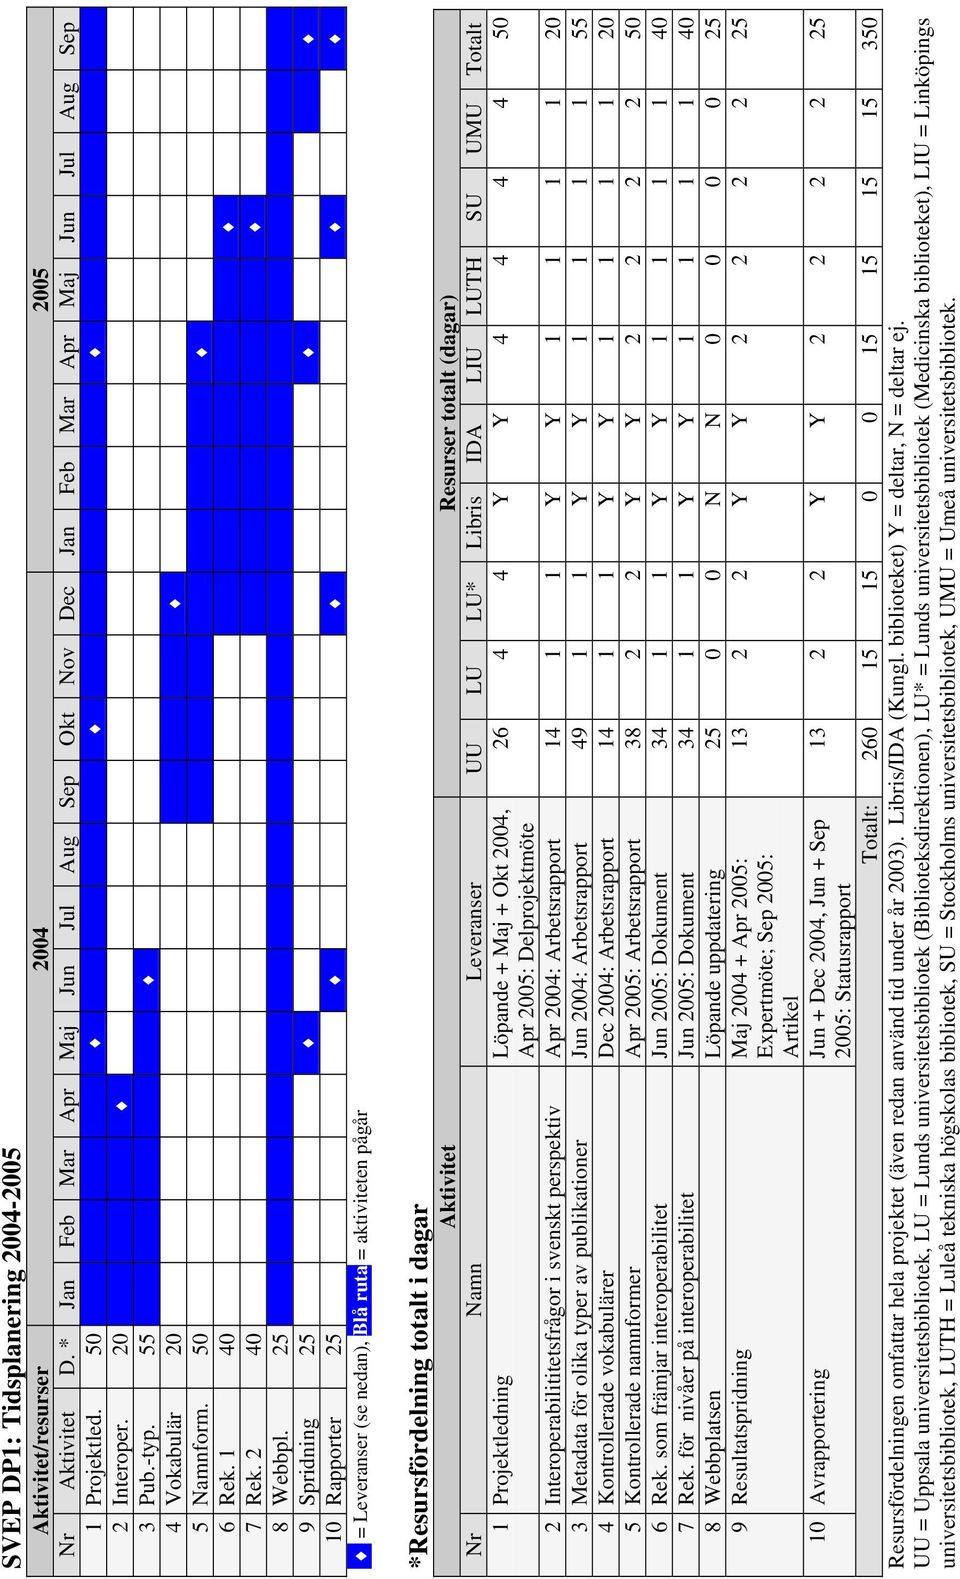 25 9 Spridning 25 10 Rapporter 25 = Leveranser (se nedan), Blå ruta = aktiviteten pågår *Resursfördelning totalt i dagar Aktivitet Resurser totalt (dagar) Nr Namn Leveranser UU LU LU* Libris IDA LIU